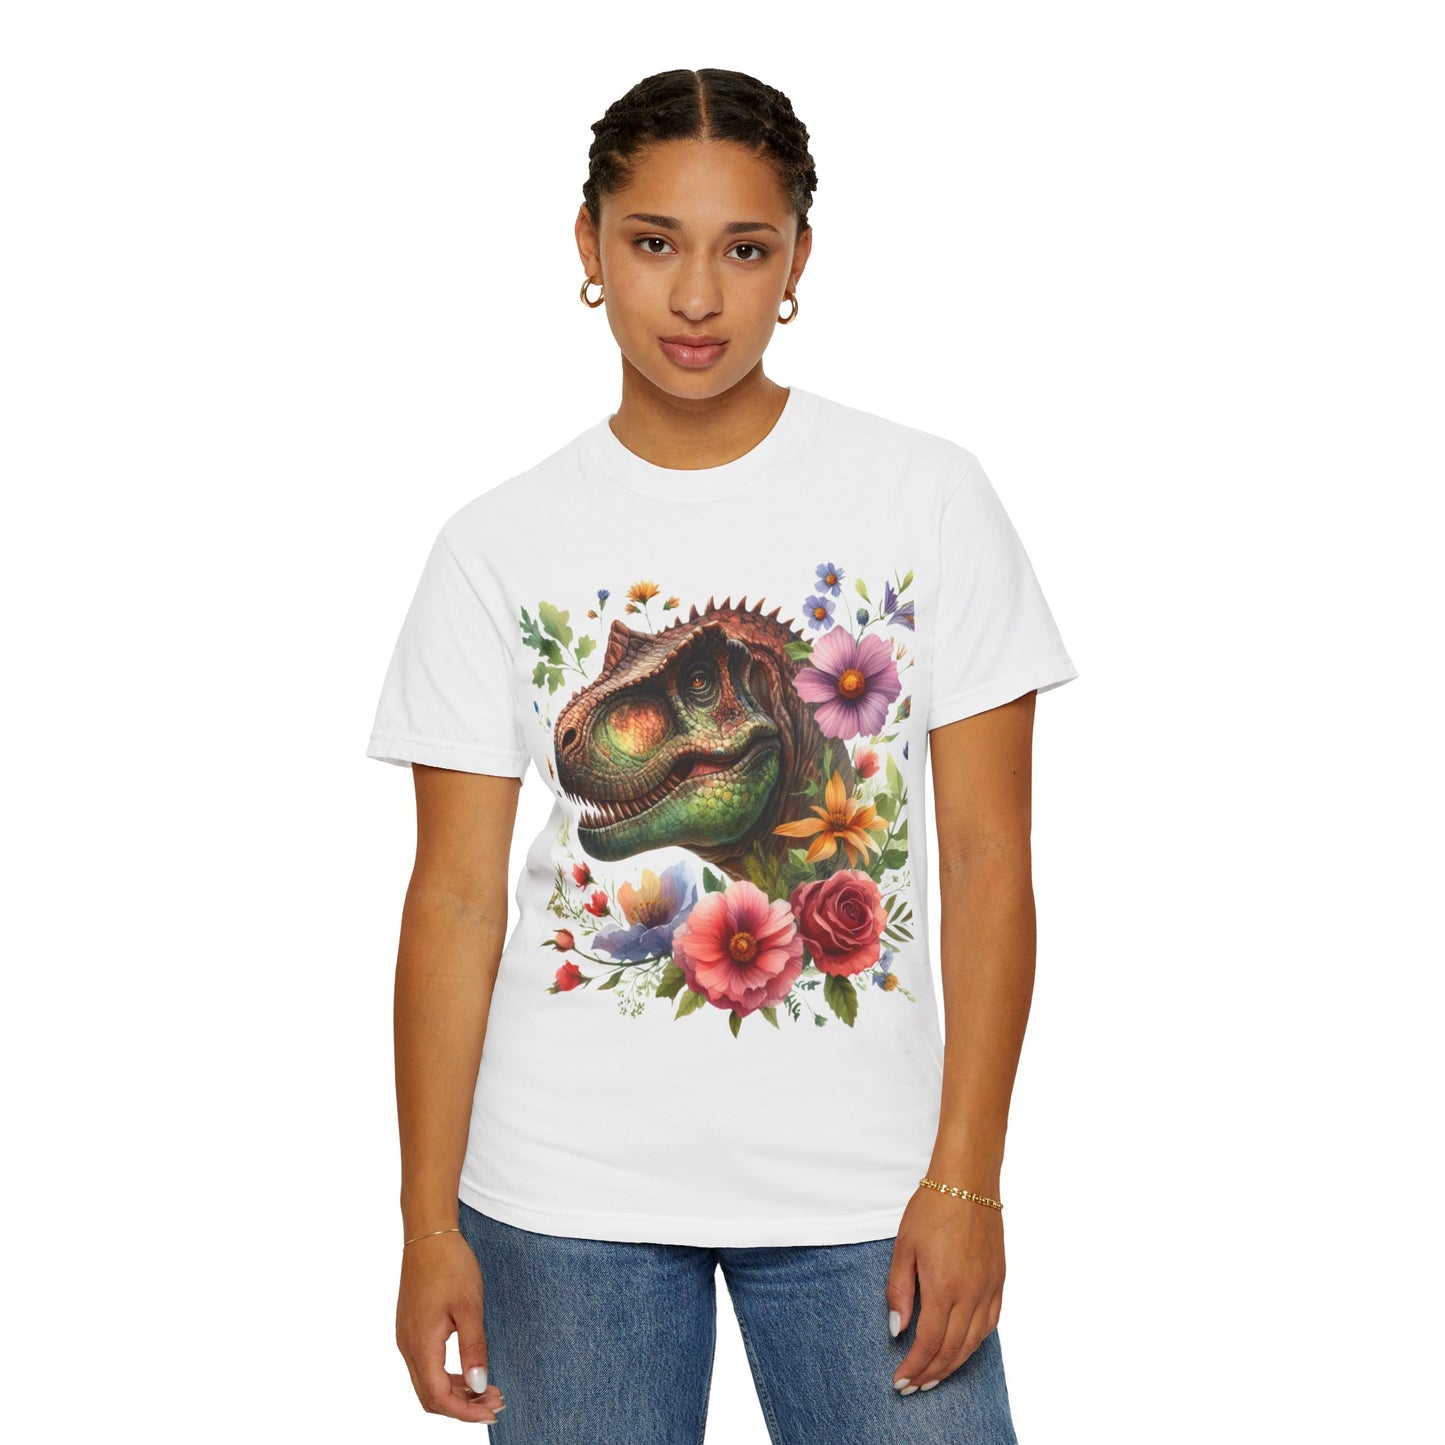 Floral Dinosaur T-shirt